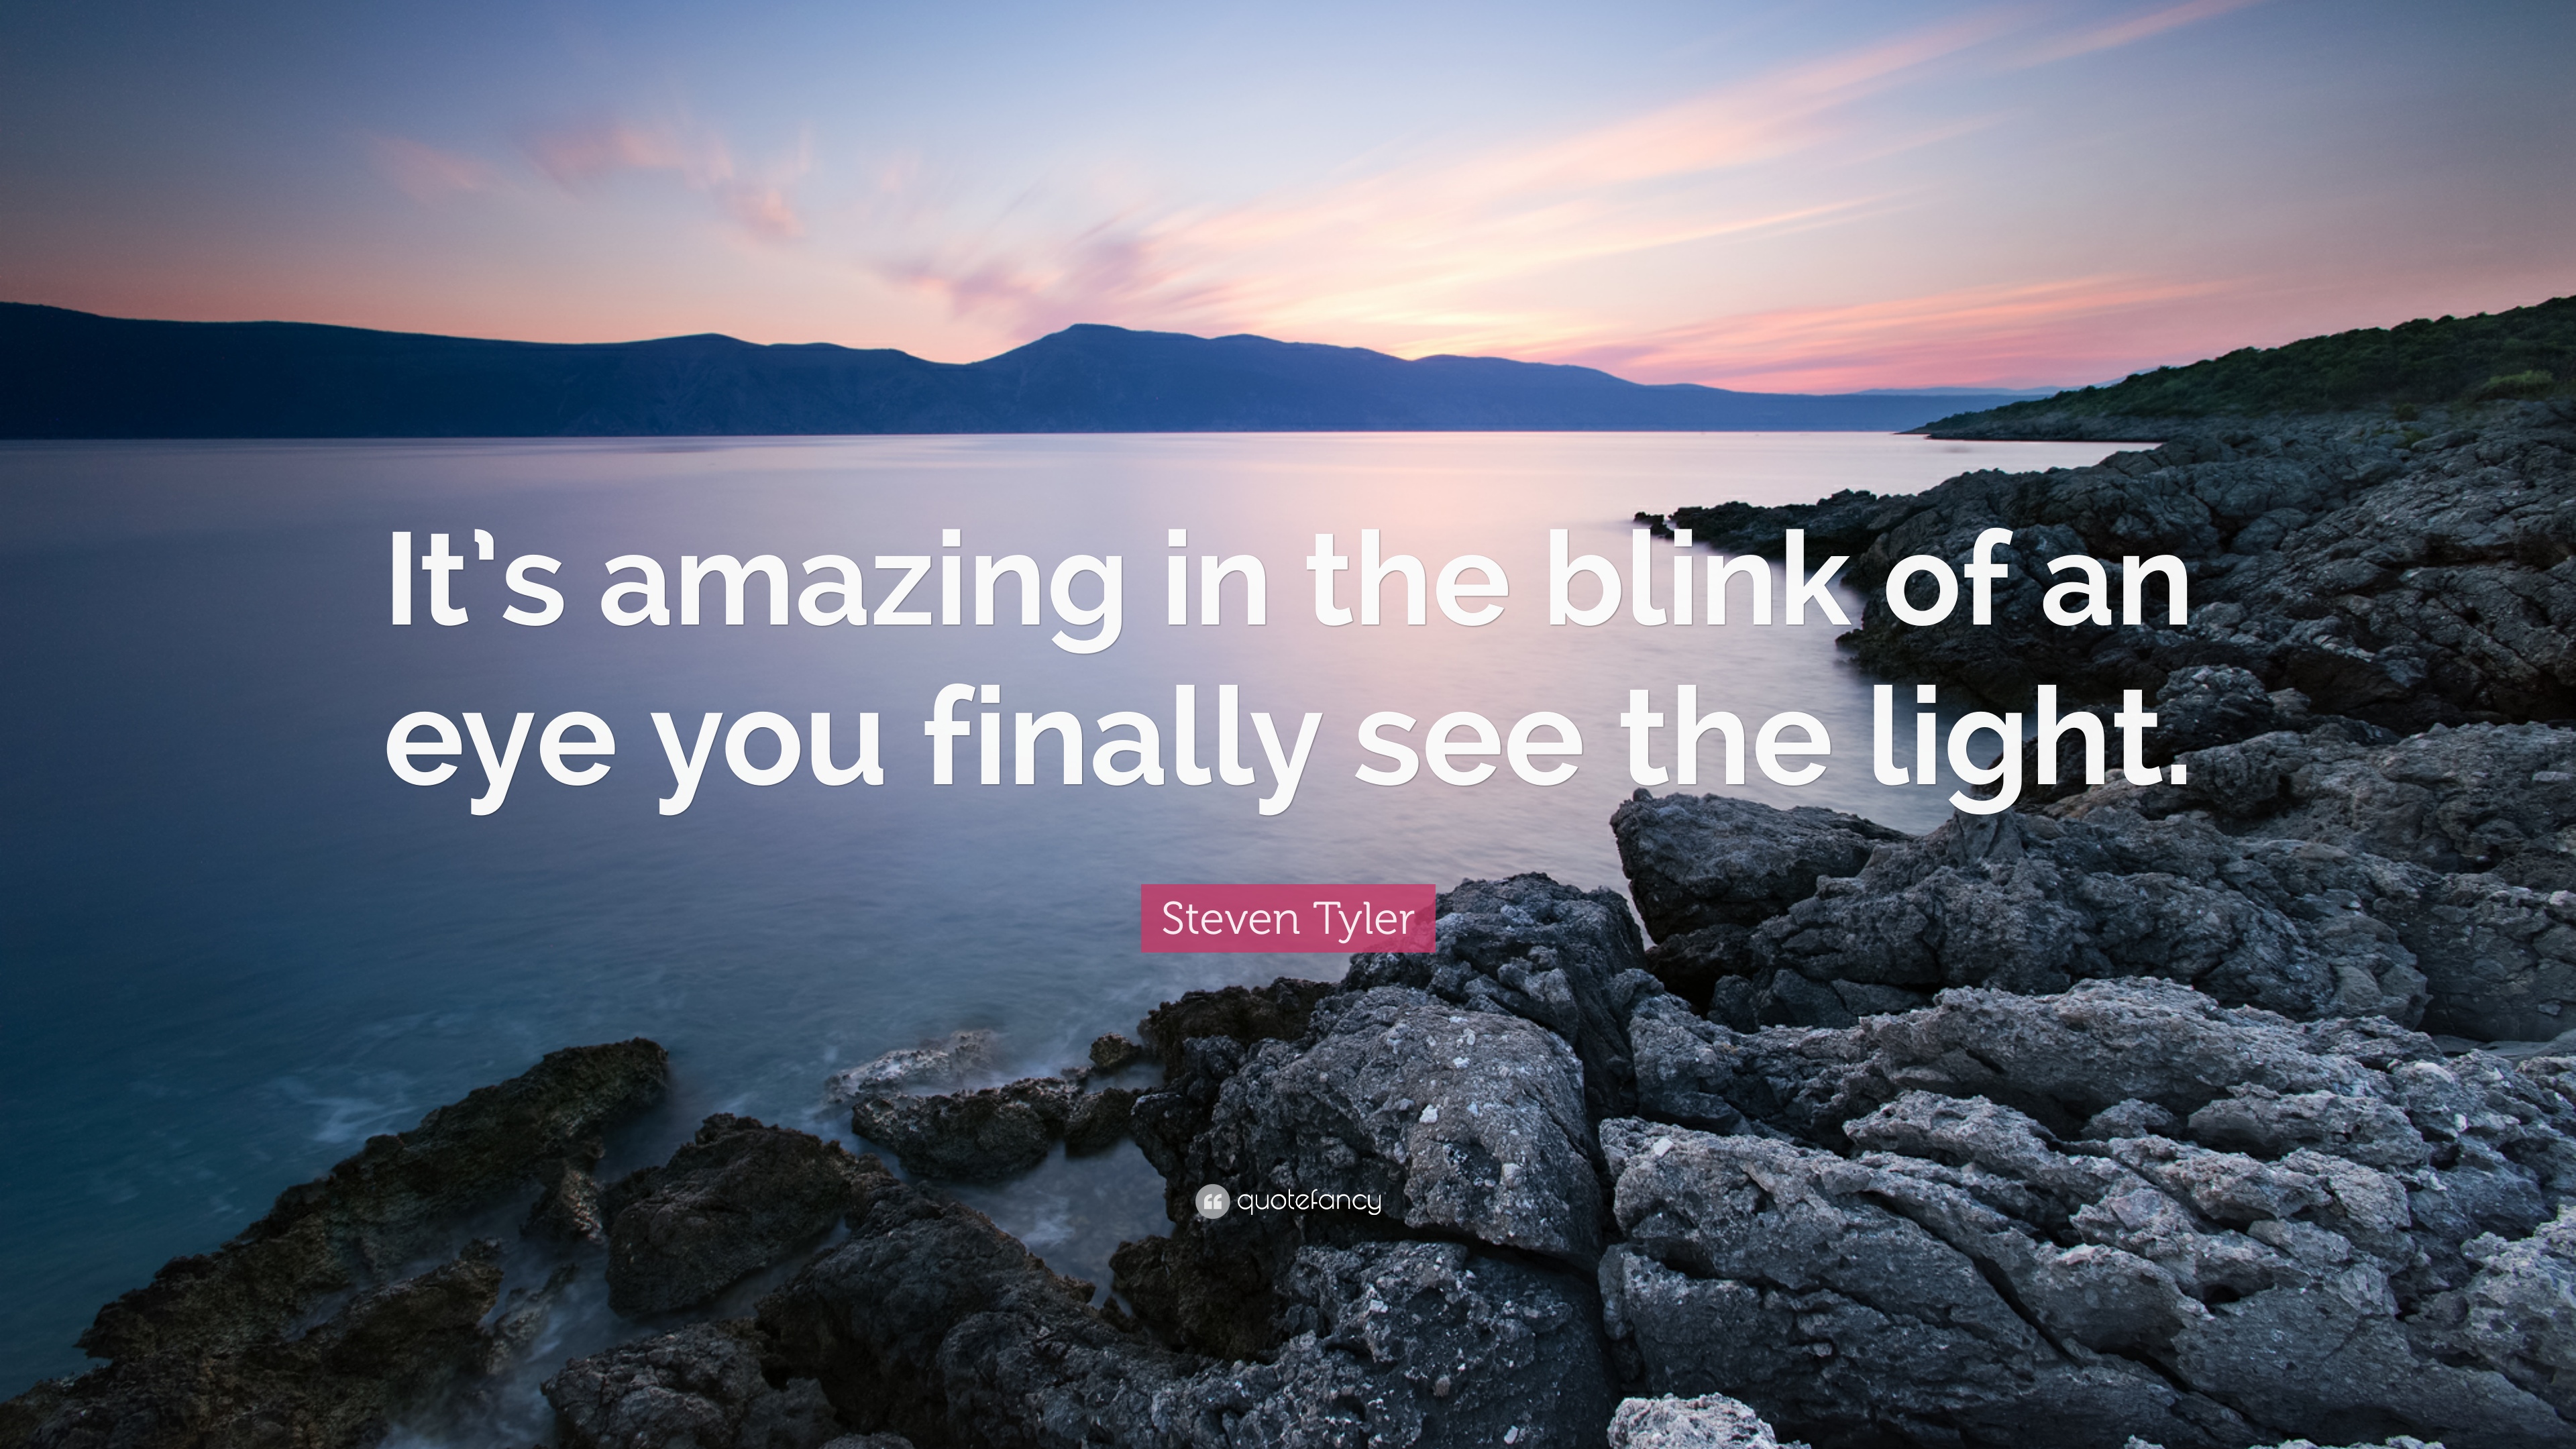 10 Best Steven Tyler Quotes